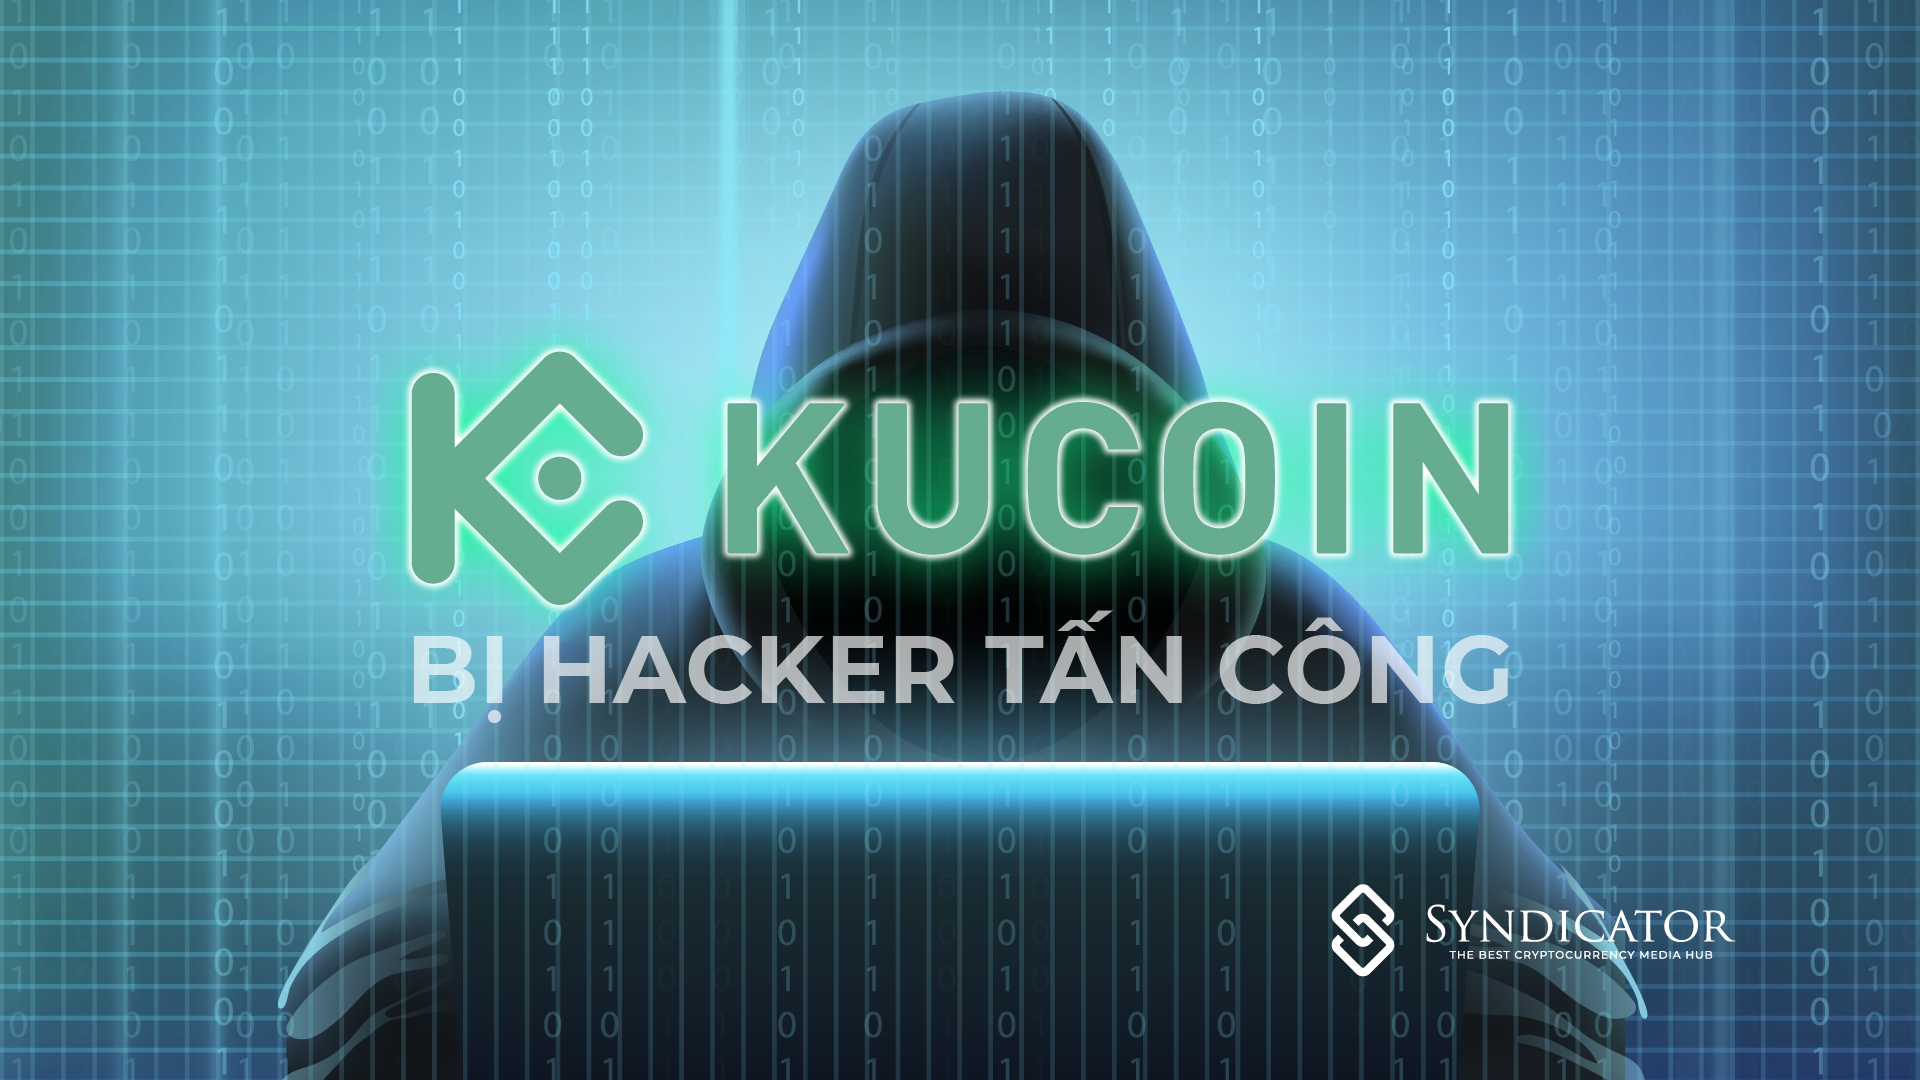 Sàn giao dịch Kucoin bị hacker tấn công, 150 triệu đô tiền mã hoá đã bị chuyển đi | Syndicator